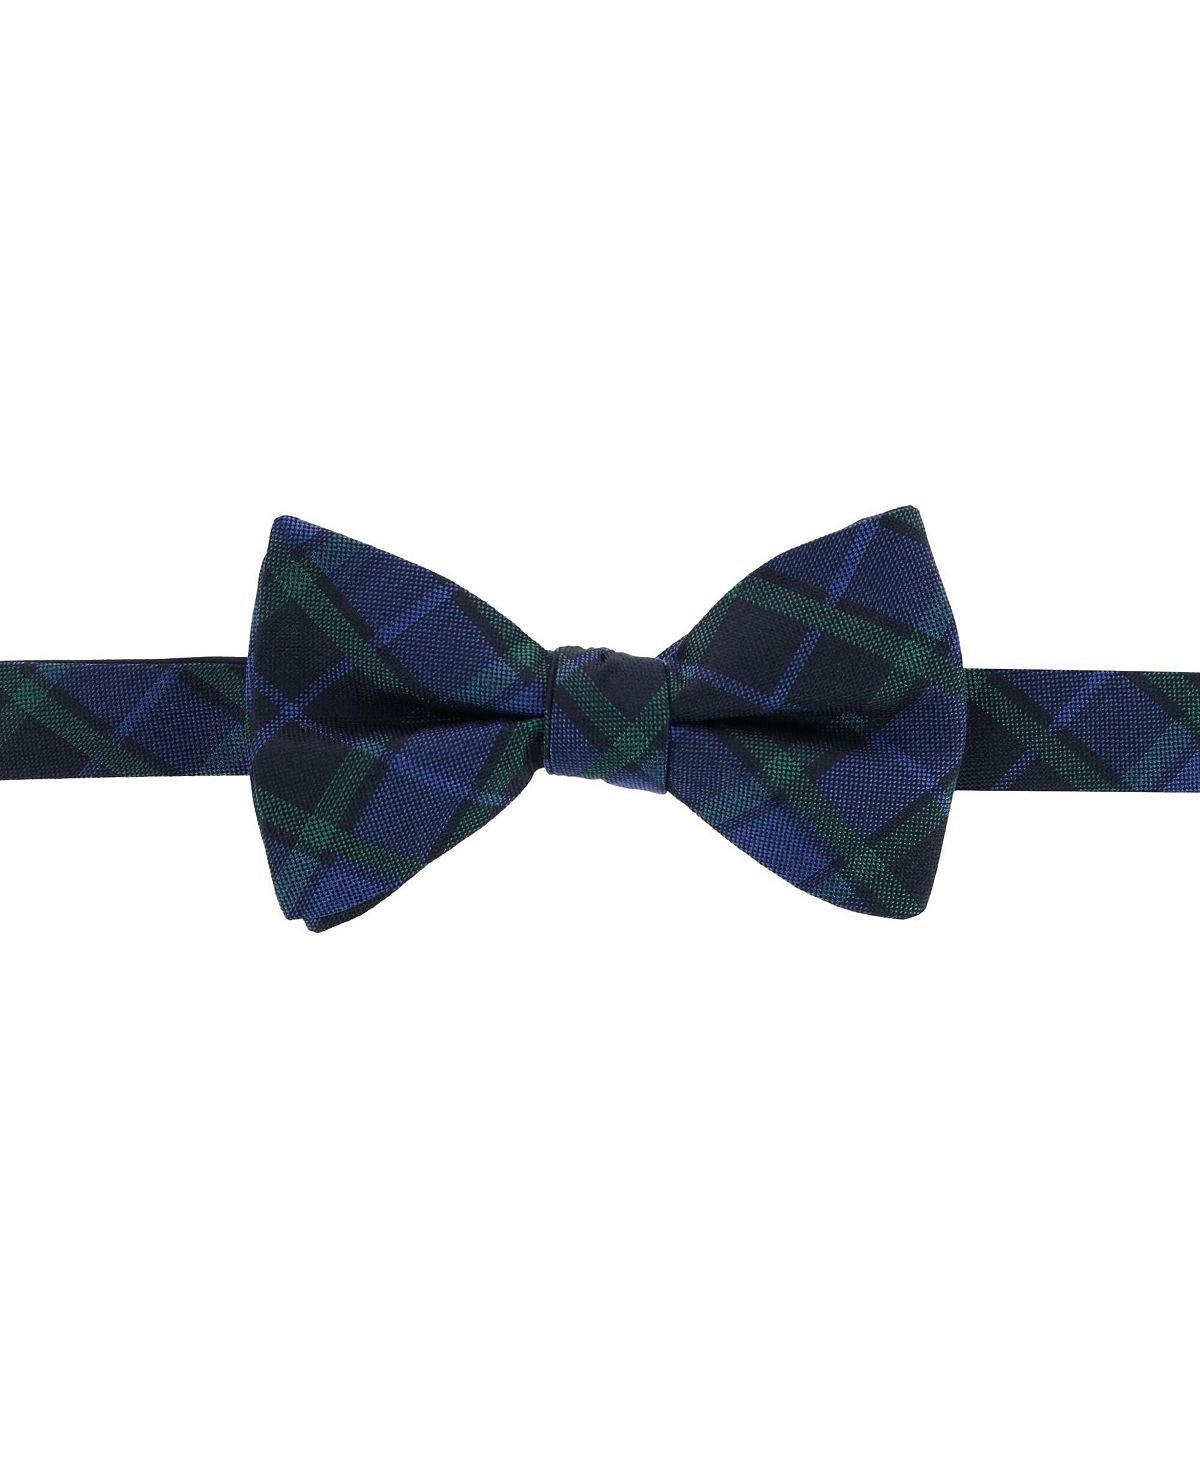 Зелено-темно-синий шелковый галстук-бабочка в клетку Ives Blackwatch TRAFALGAR галстук бабочка подиум сиреневая с цветочным узором